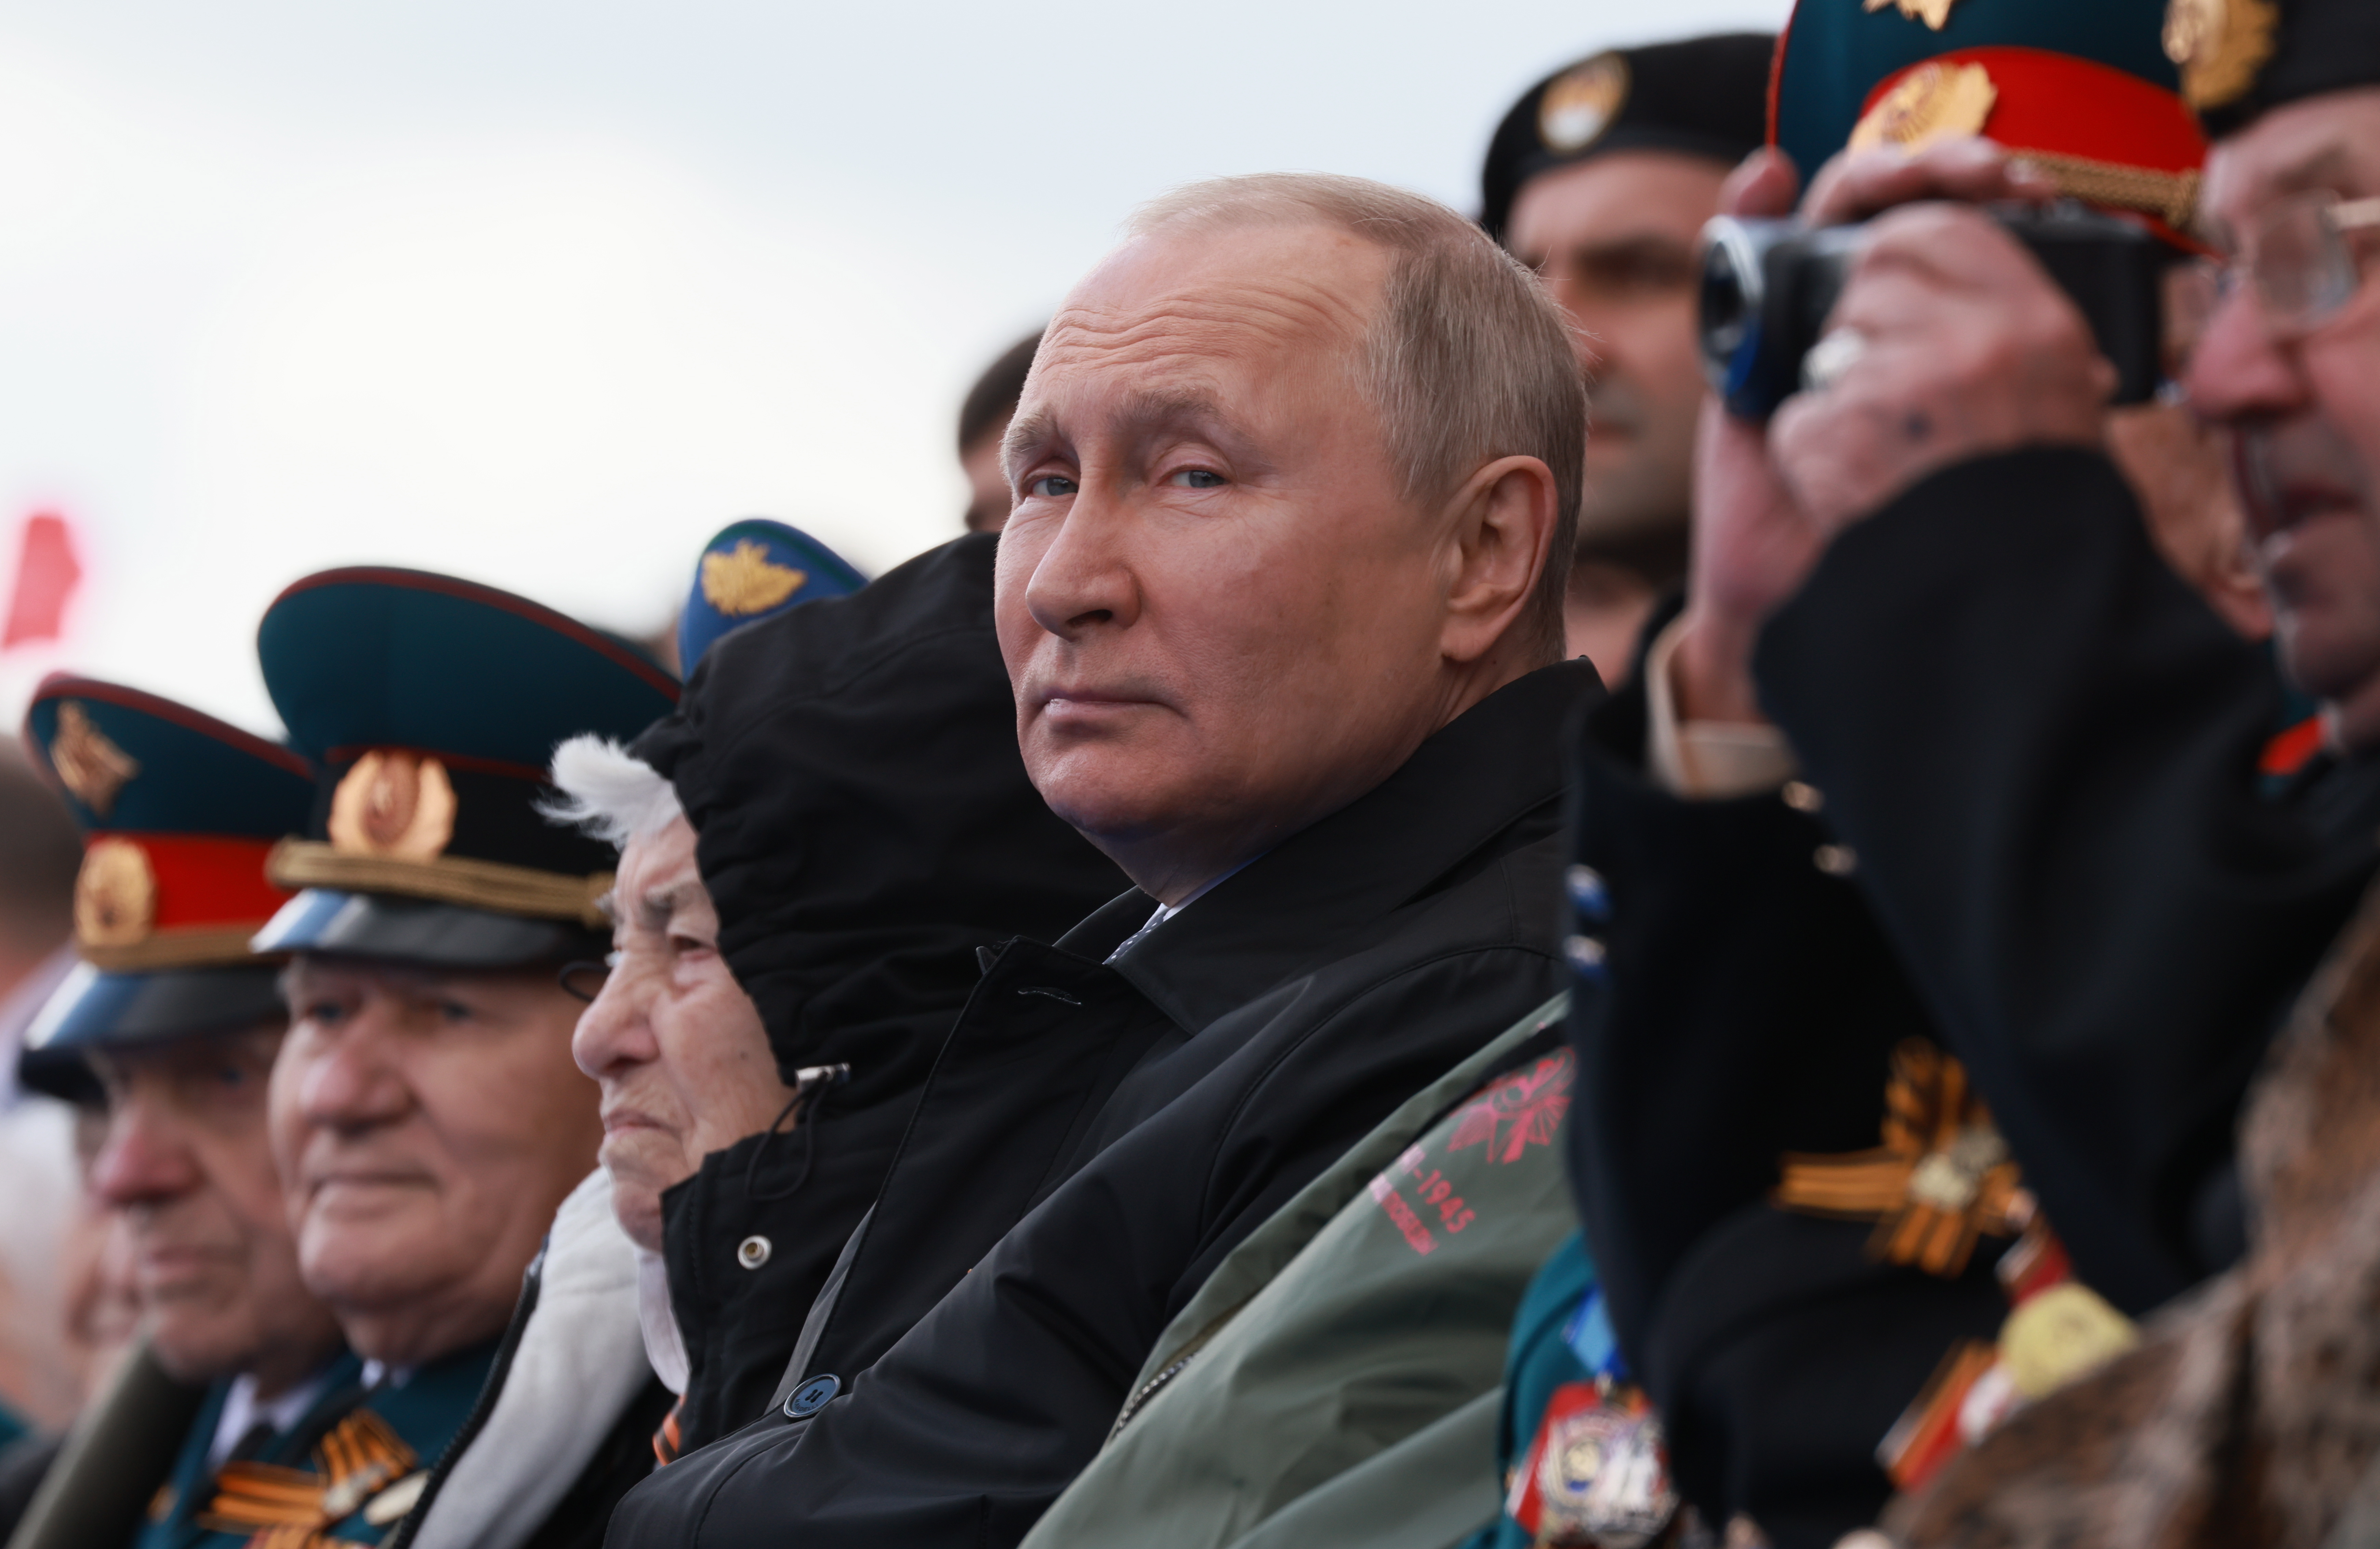 Cara hinchada y movimientos tensos: el estado de salud de Putin, objeto de rumores